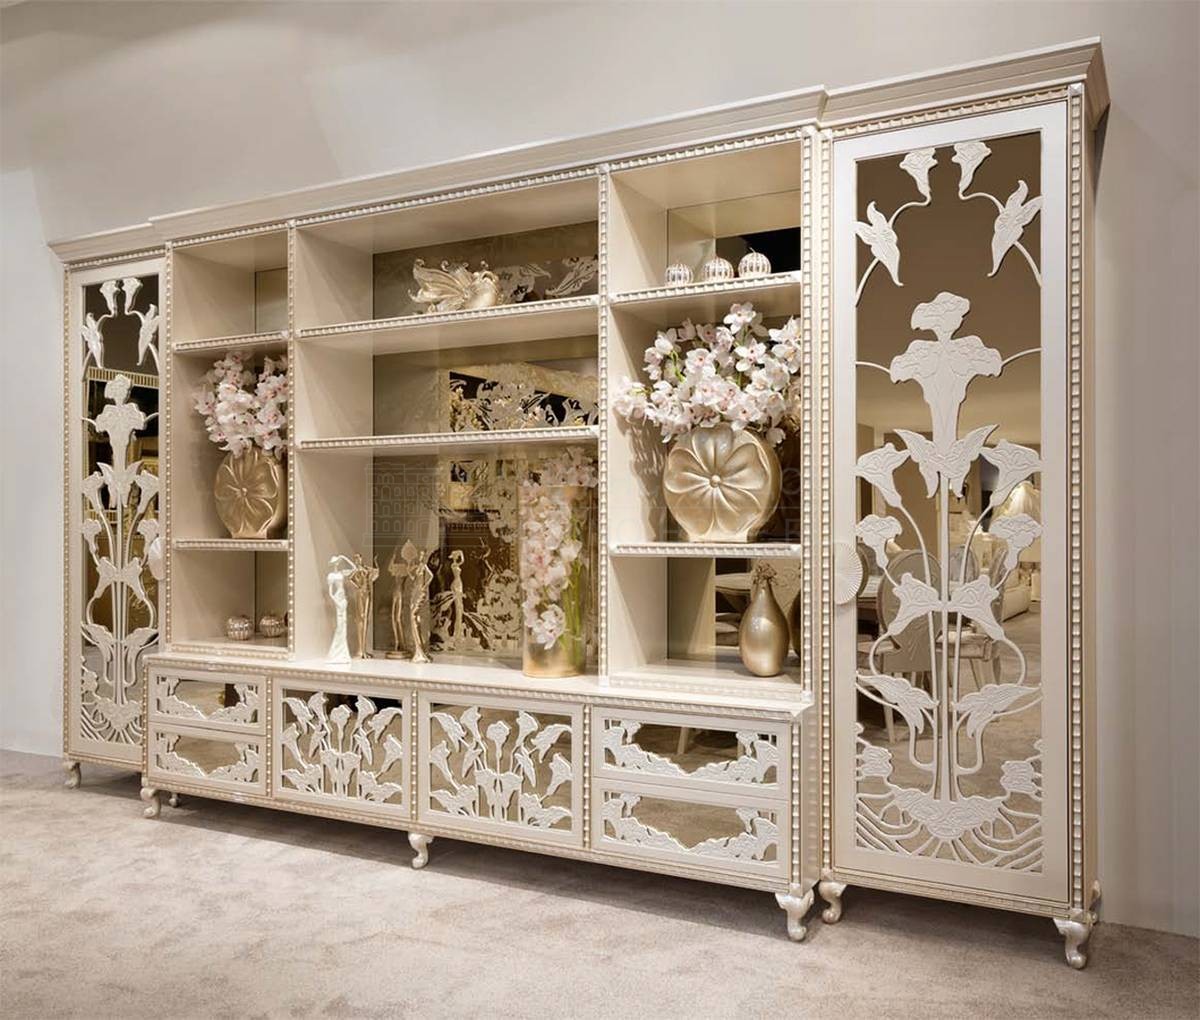 Мебель для ТВ Bellavita Luxury / art. 525 из Италии фабрики HALLEY